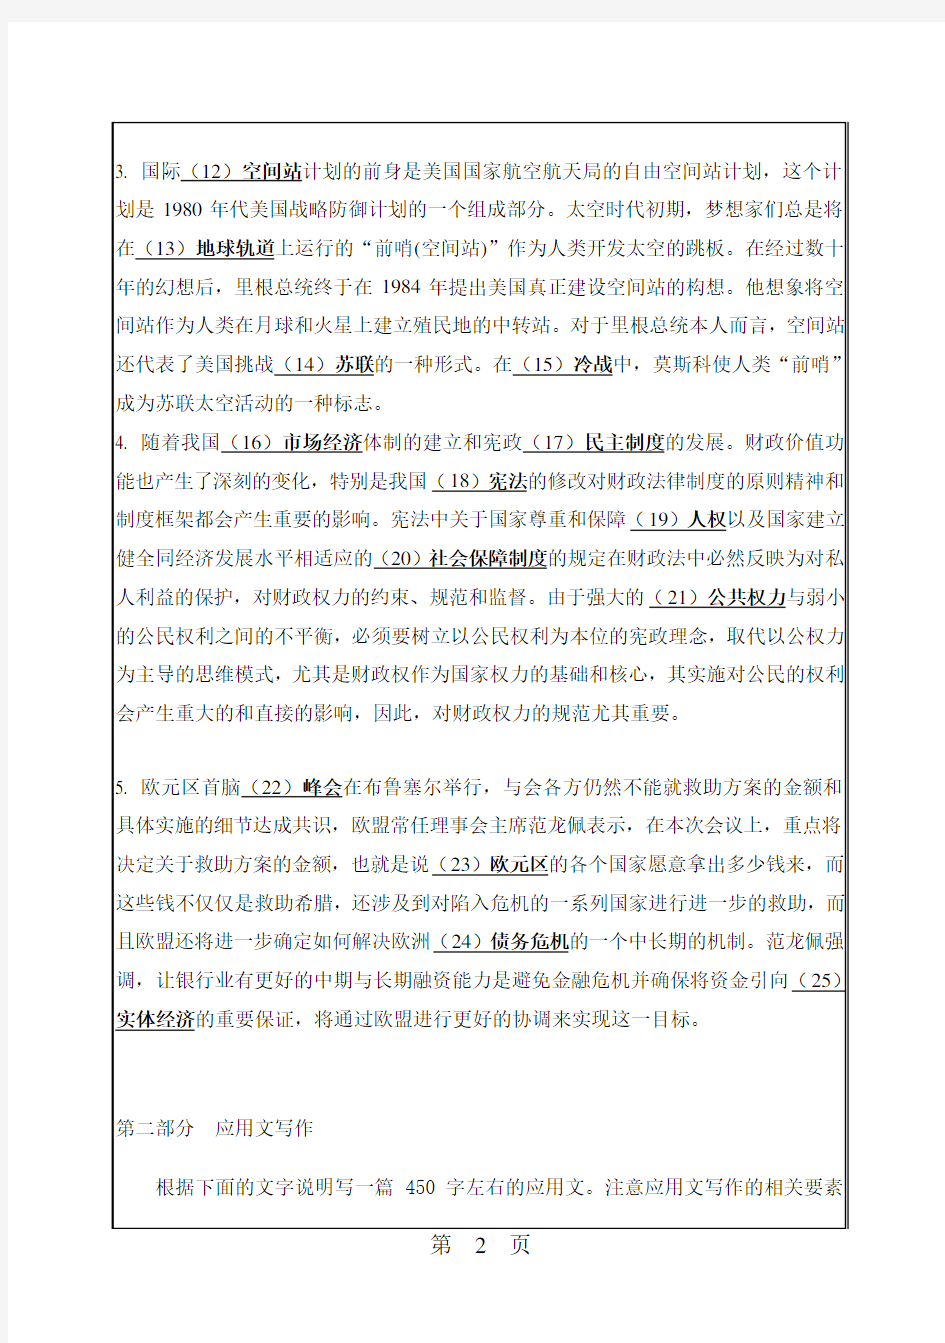 【华南理工大学2012年考研专业课真题】汉语写作与百科知识2012